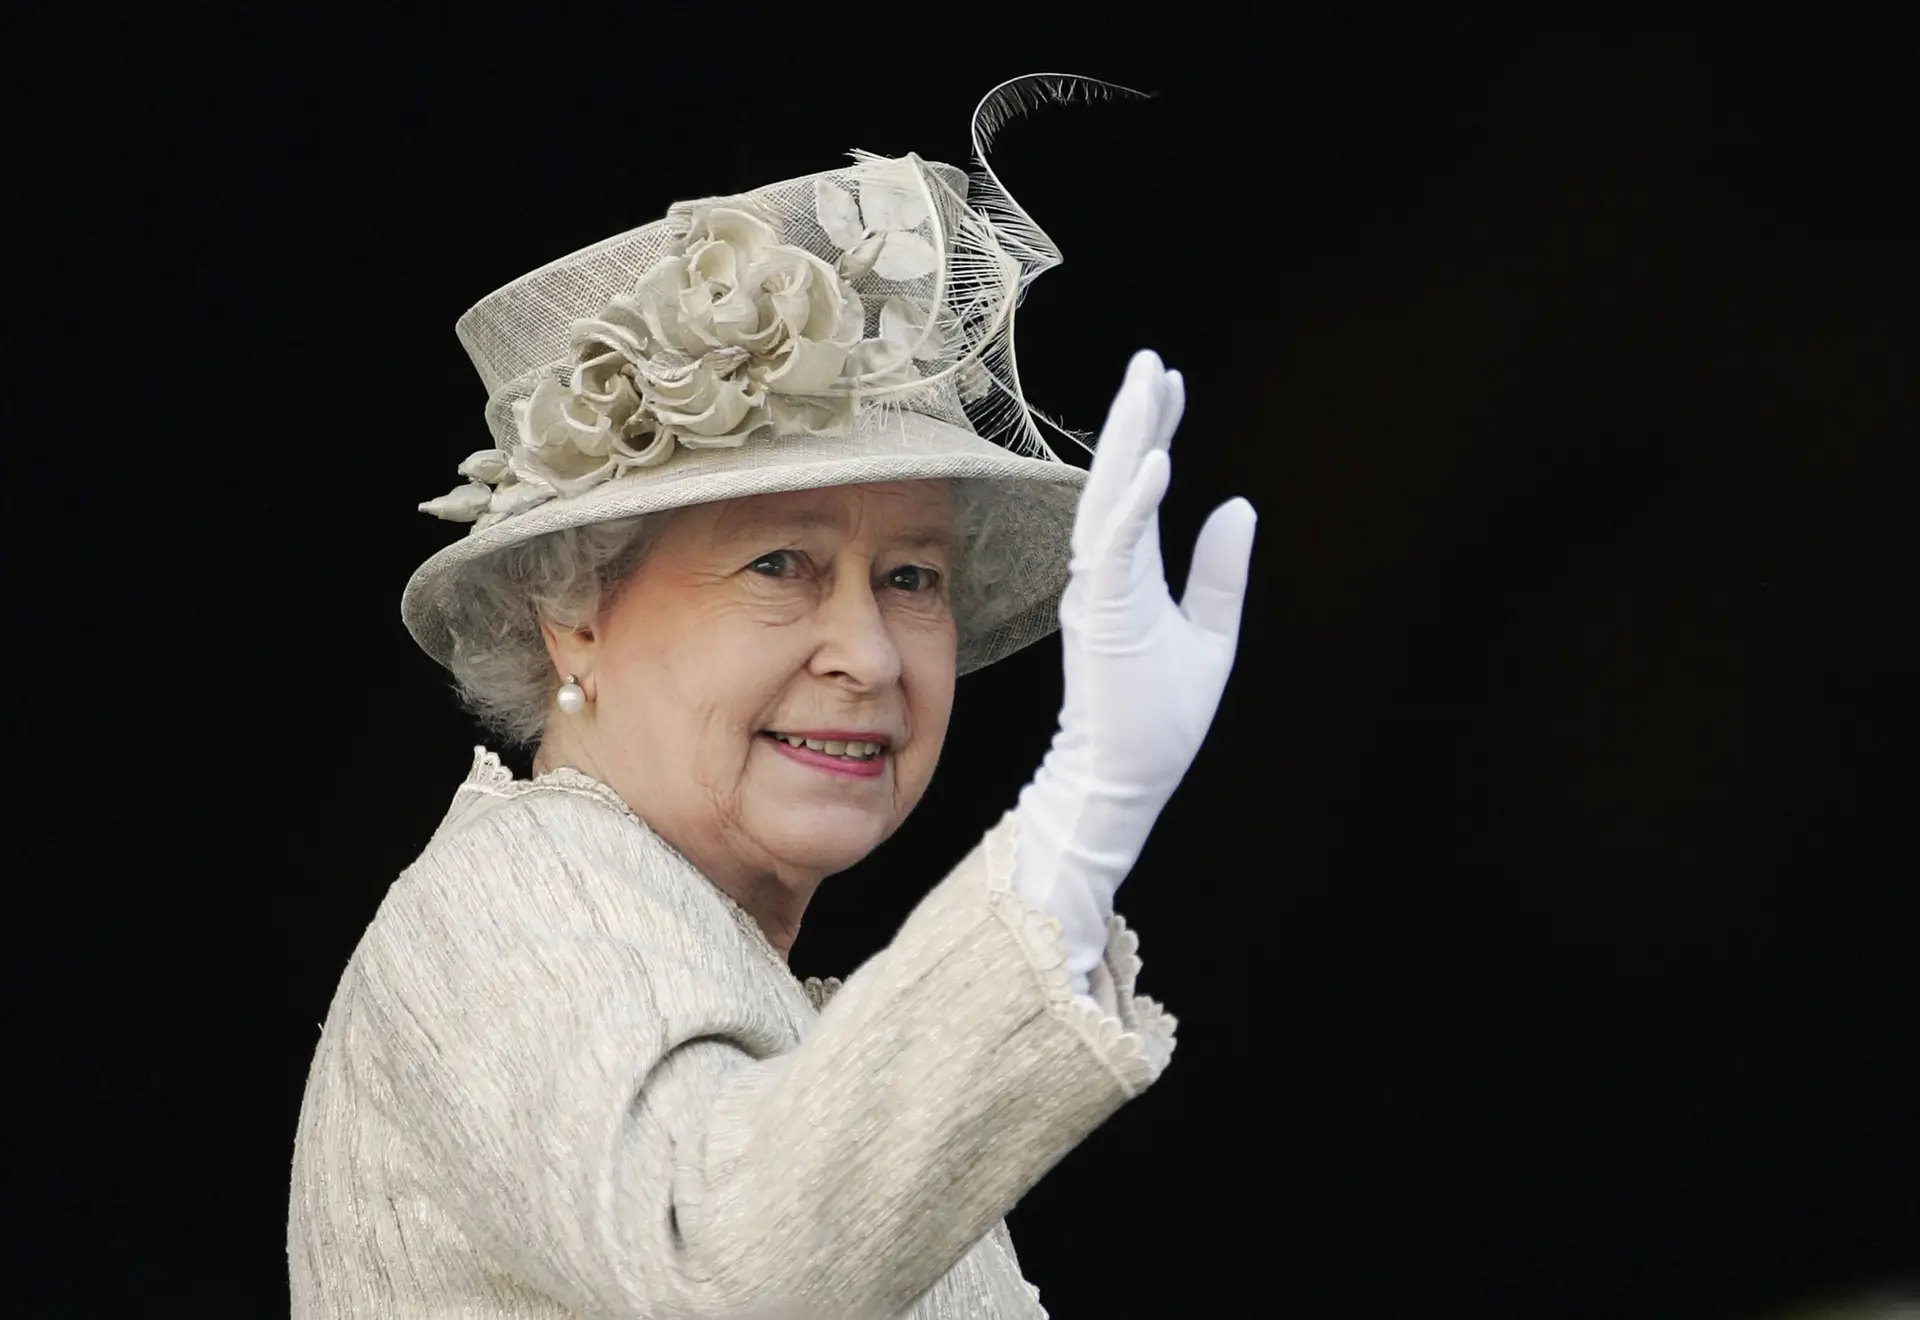 Rainha Isabel II morreu de "velhice", revela certidão de óbito